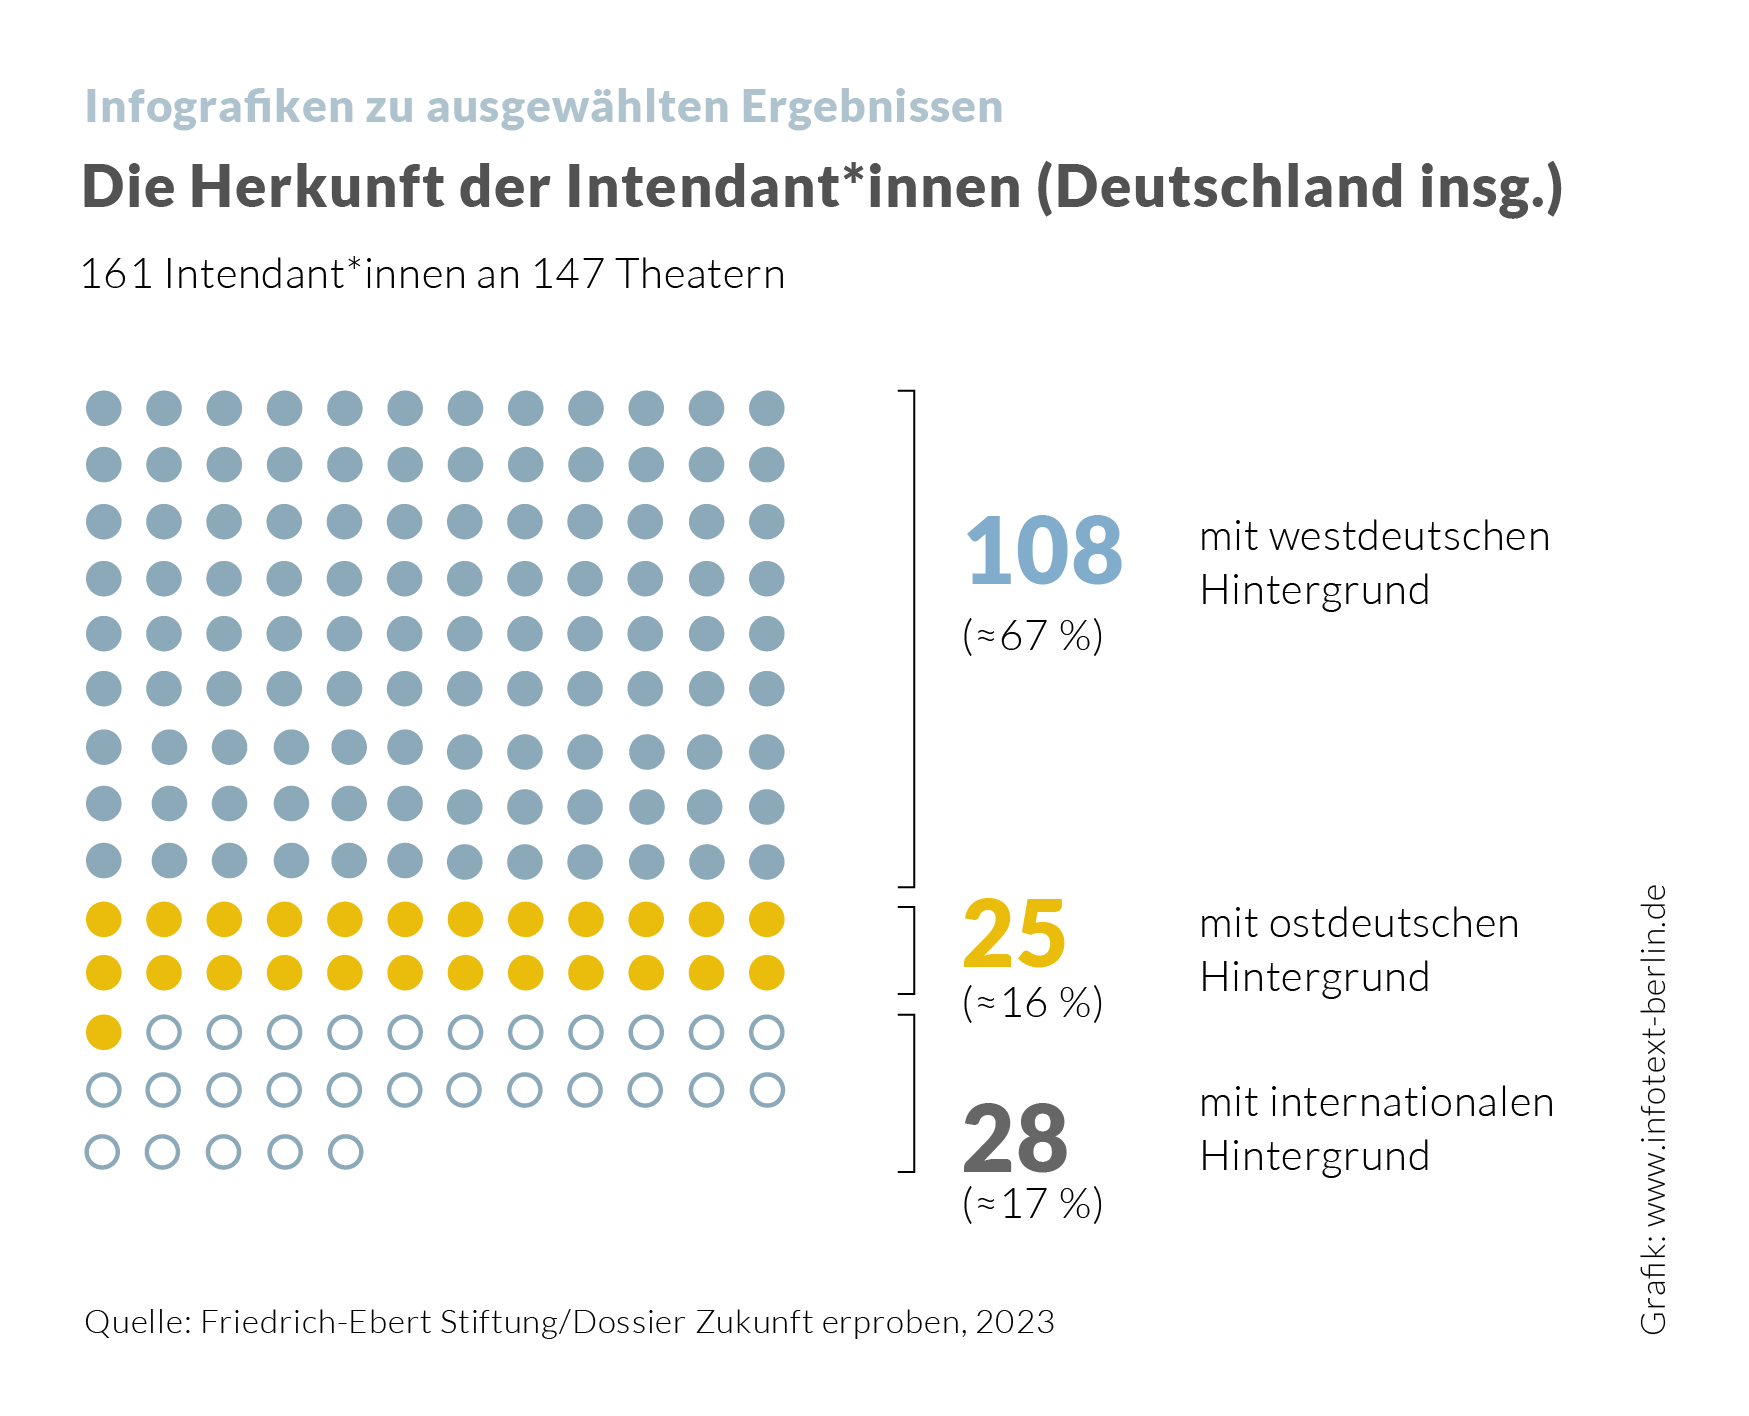 Infografik zur Herkunft der Intendant*innen in Deutschland